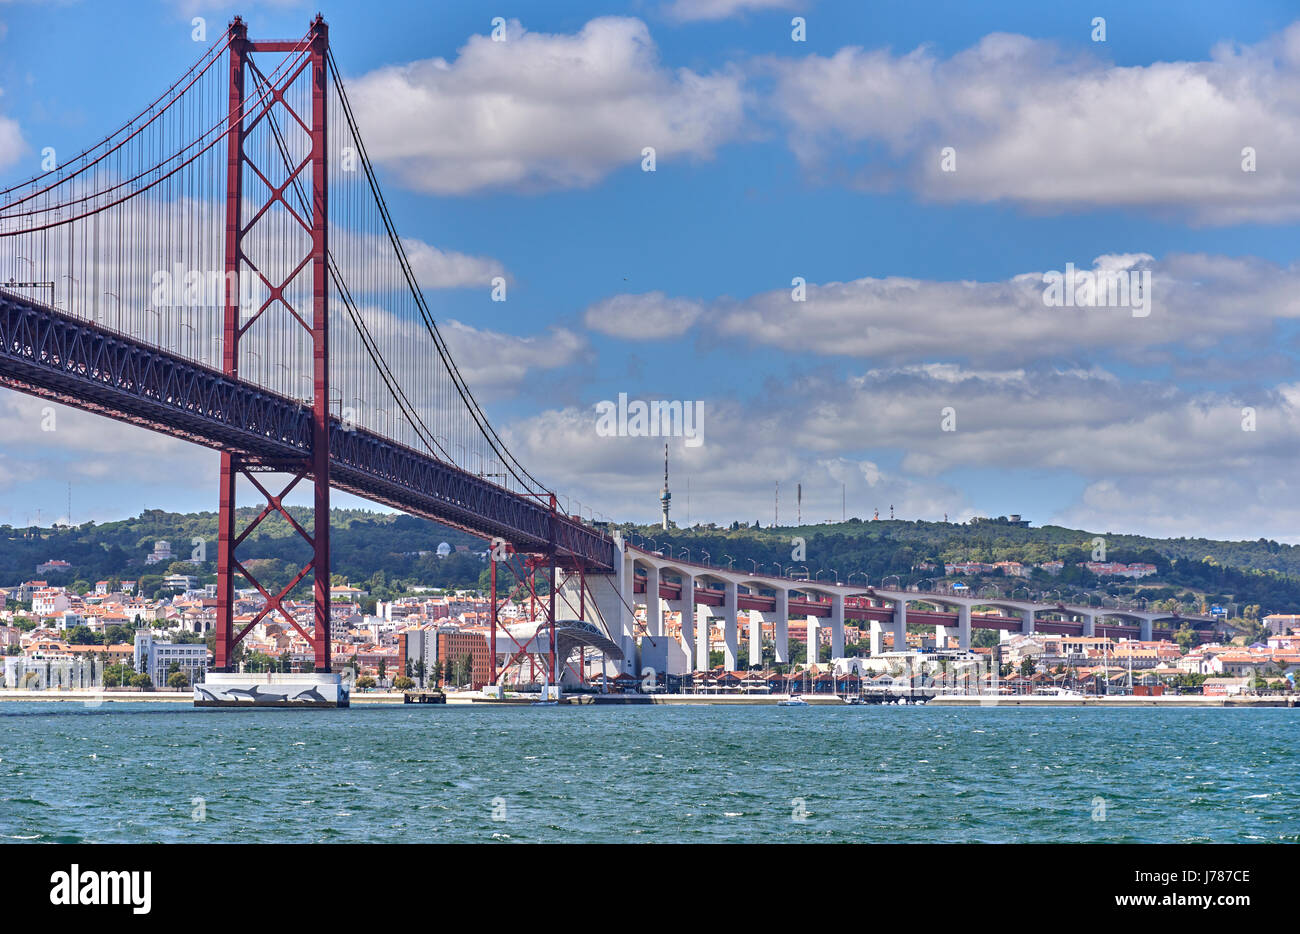 The 25 de Abril Bridge Ponte 25 de Abril, 25th of April Bridge, is a suspension bridge connecting the city of Lisbon Stock Photo